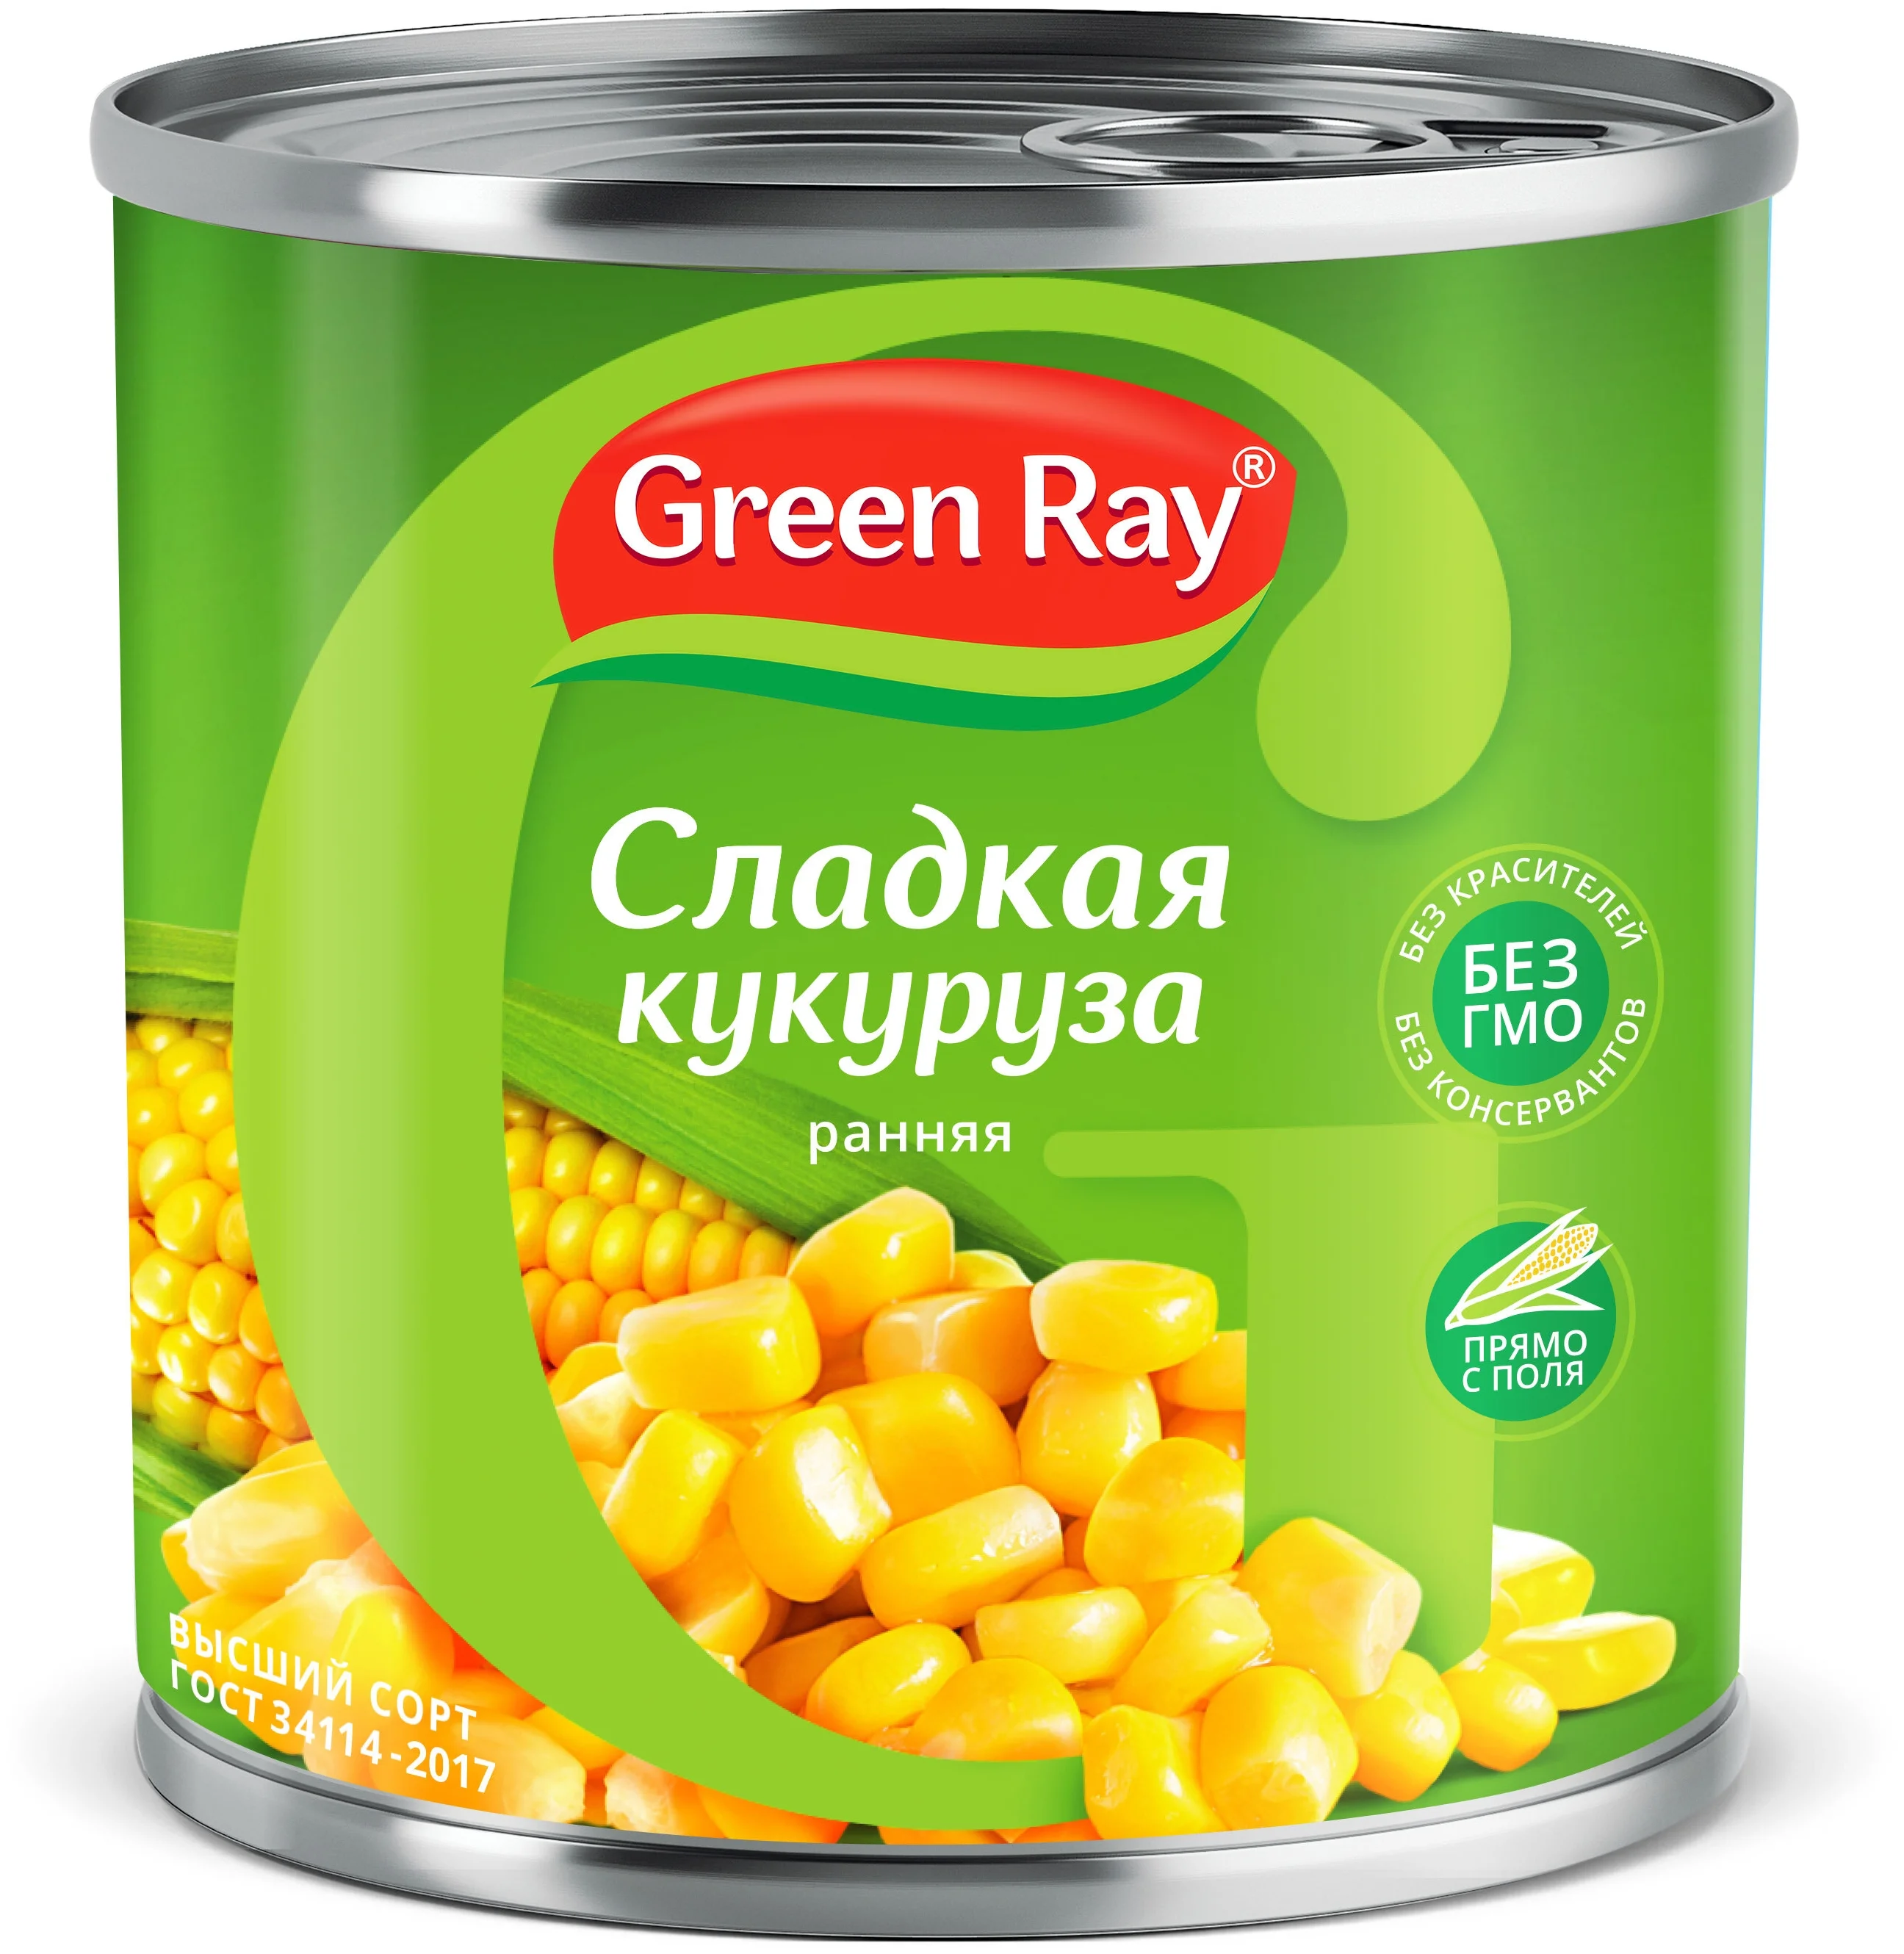     Green Ray 425 